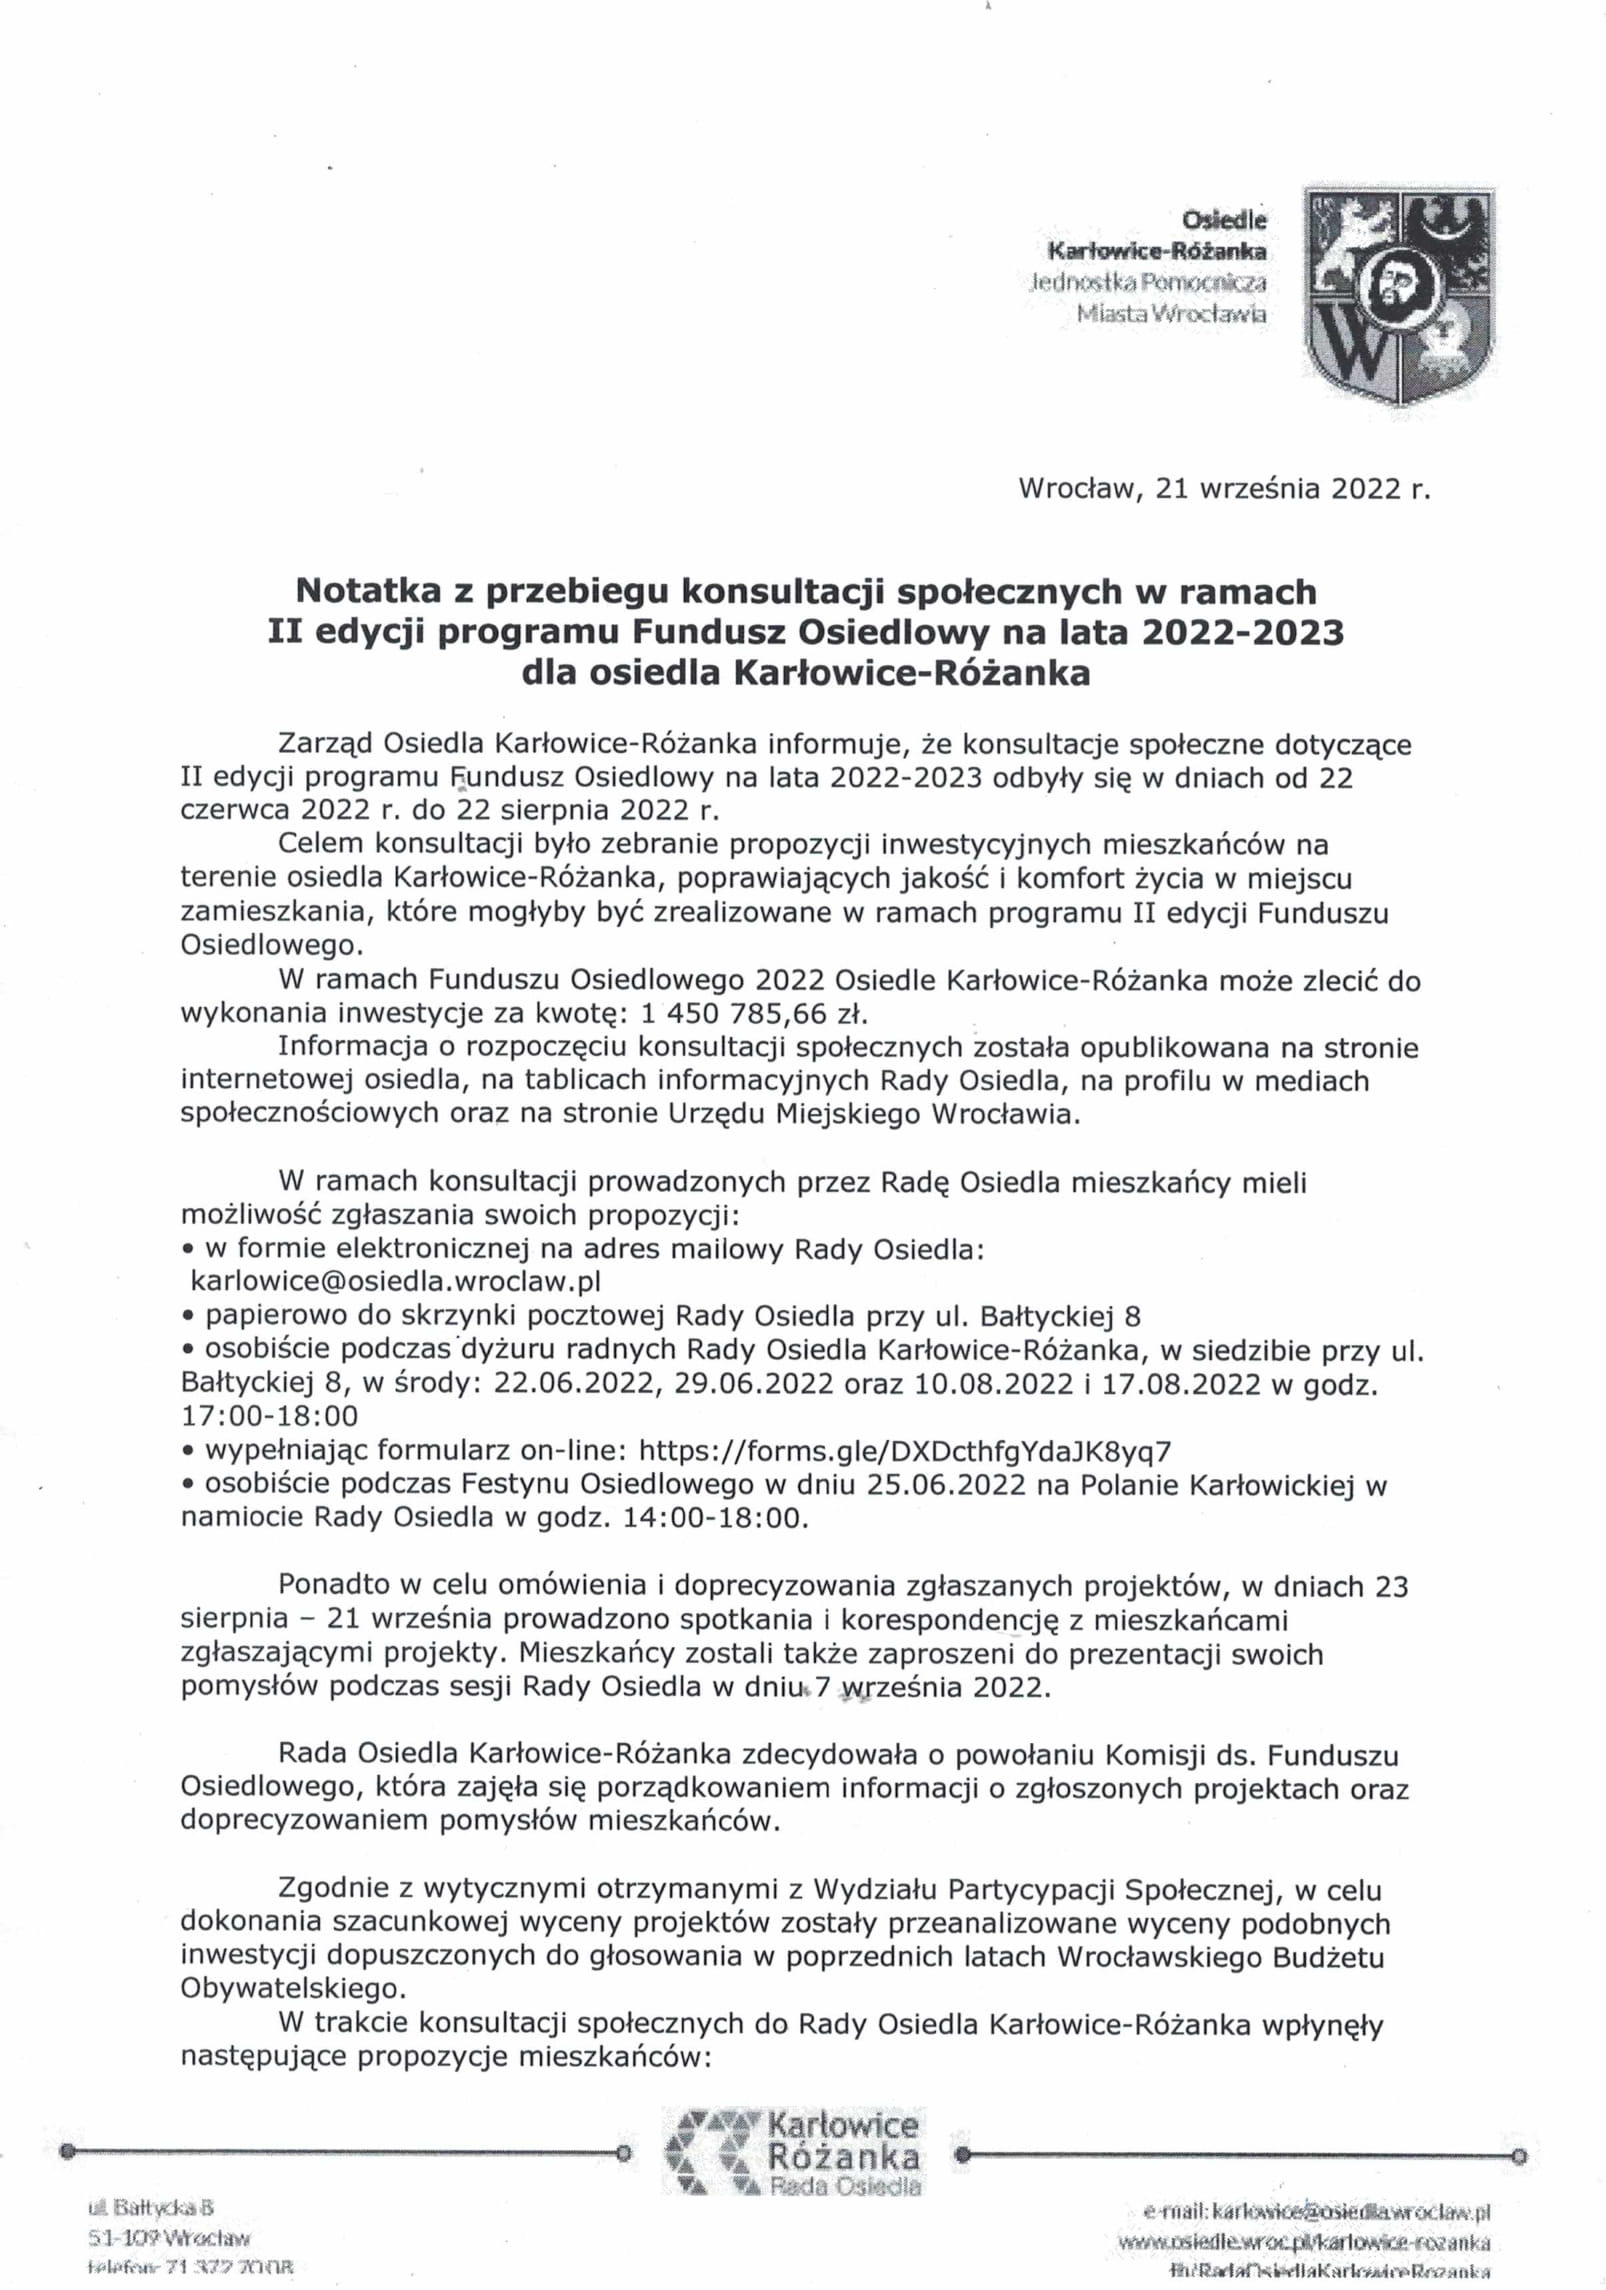 Notatka z konsultacji Karłowice Różanka Fundusz Osiedlowy 2022 1